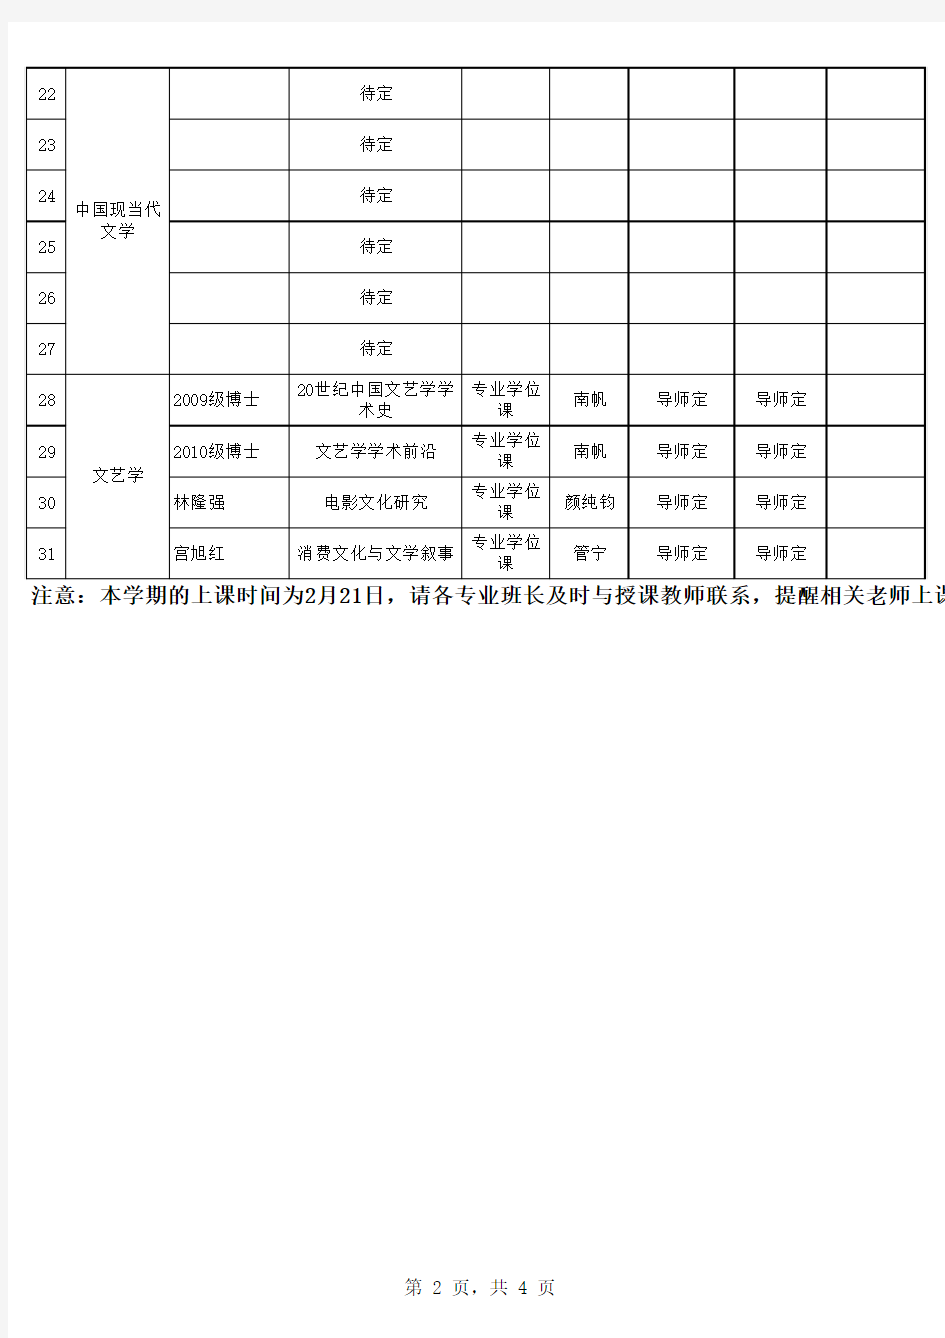 福师大文学院2010-2011学年第二学期研究生课程表